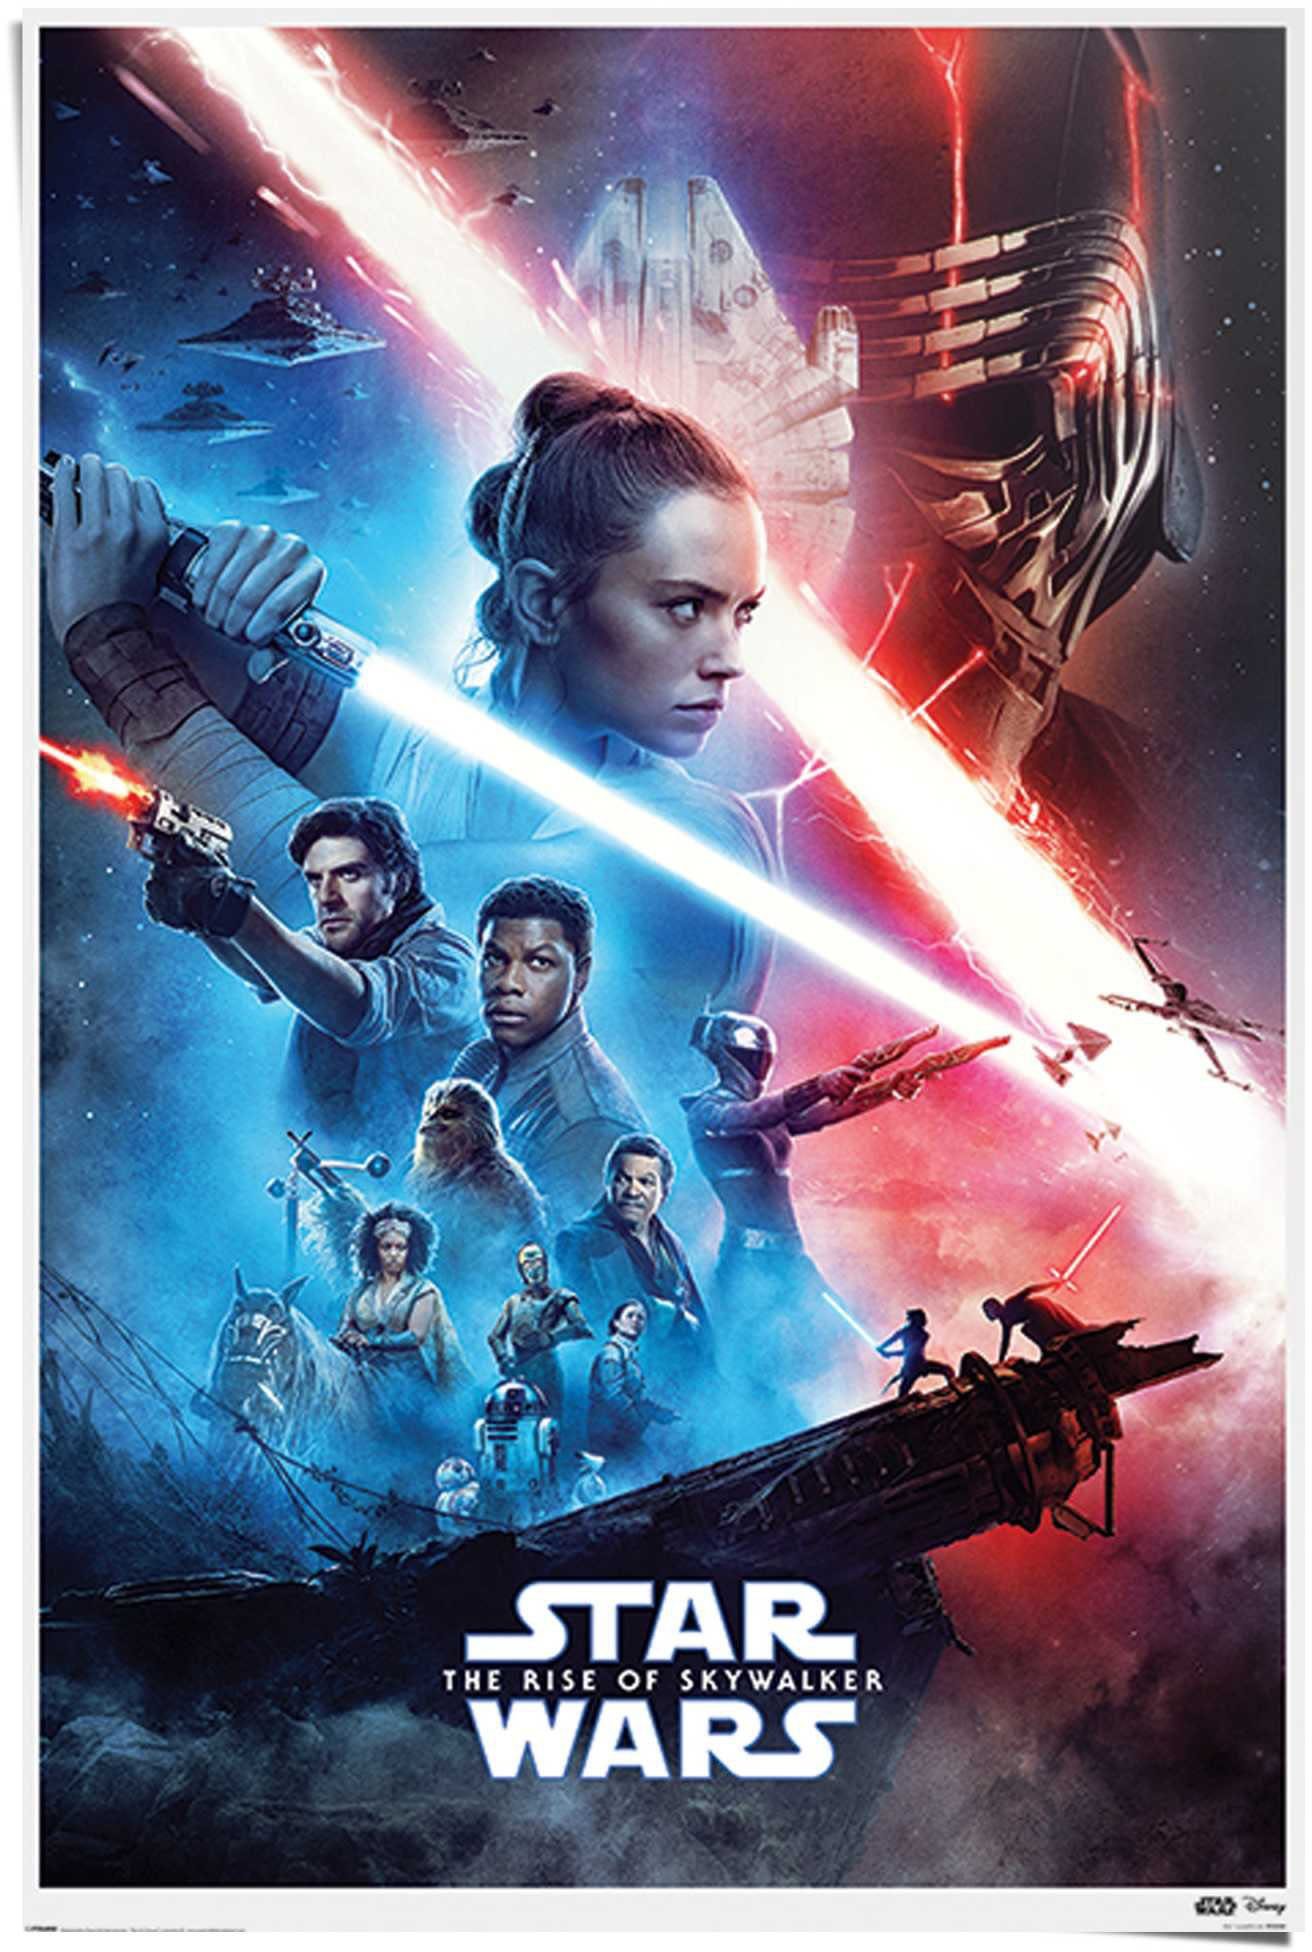 günstigen Preisen erhältlich. Reinders! Poster St) (1 Rise Skywalker Wars - Star The Filmplakat, of